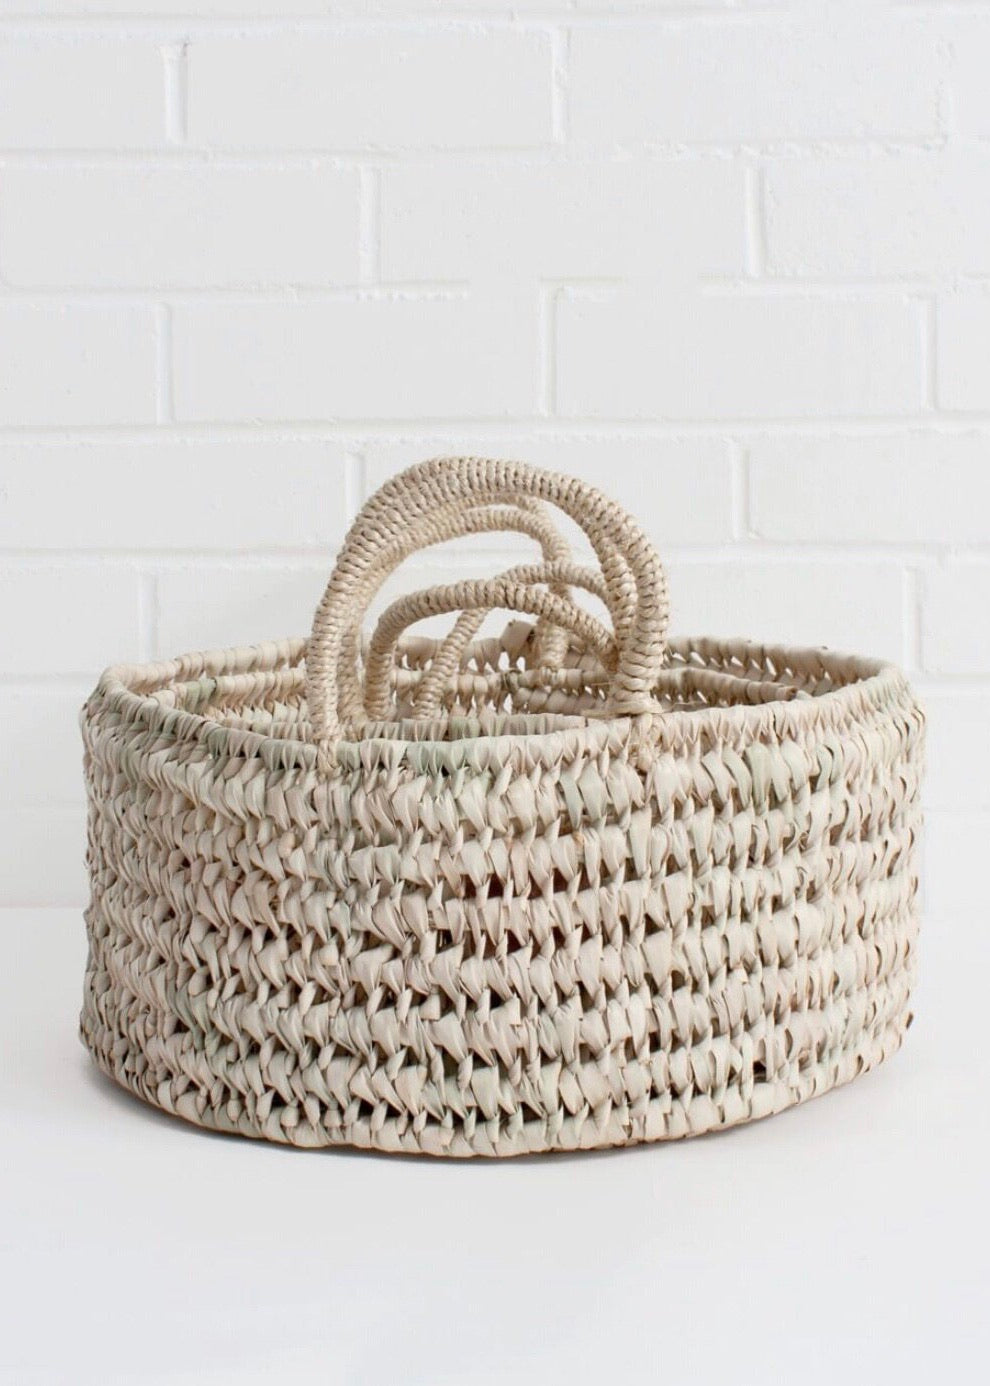 Bohemia Design - Round Storage Baskets